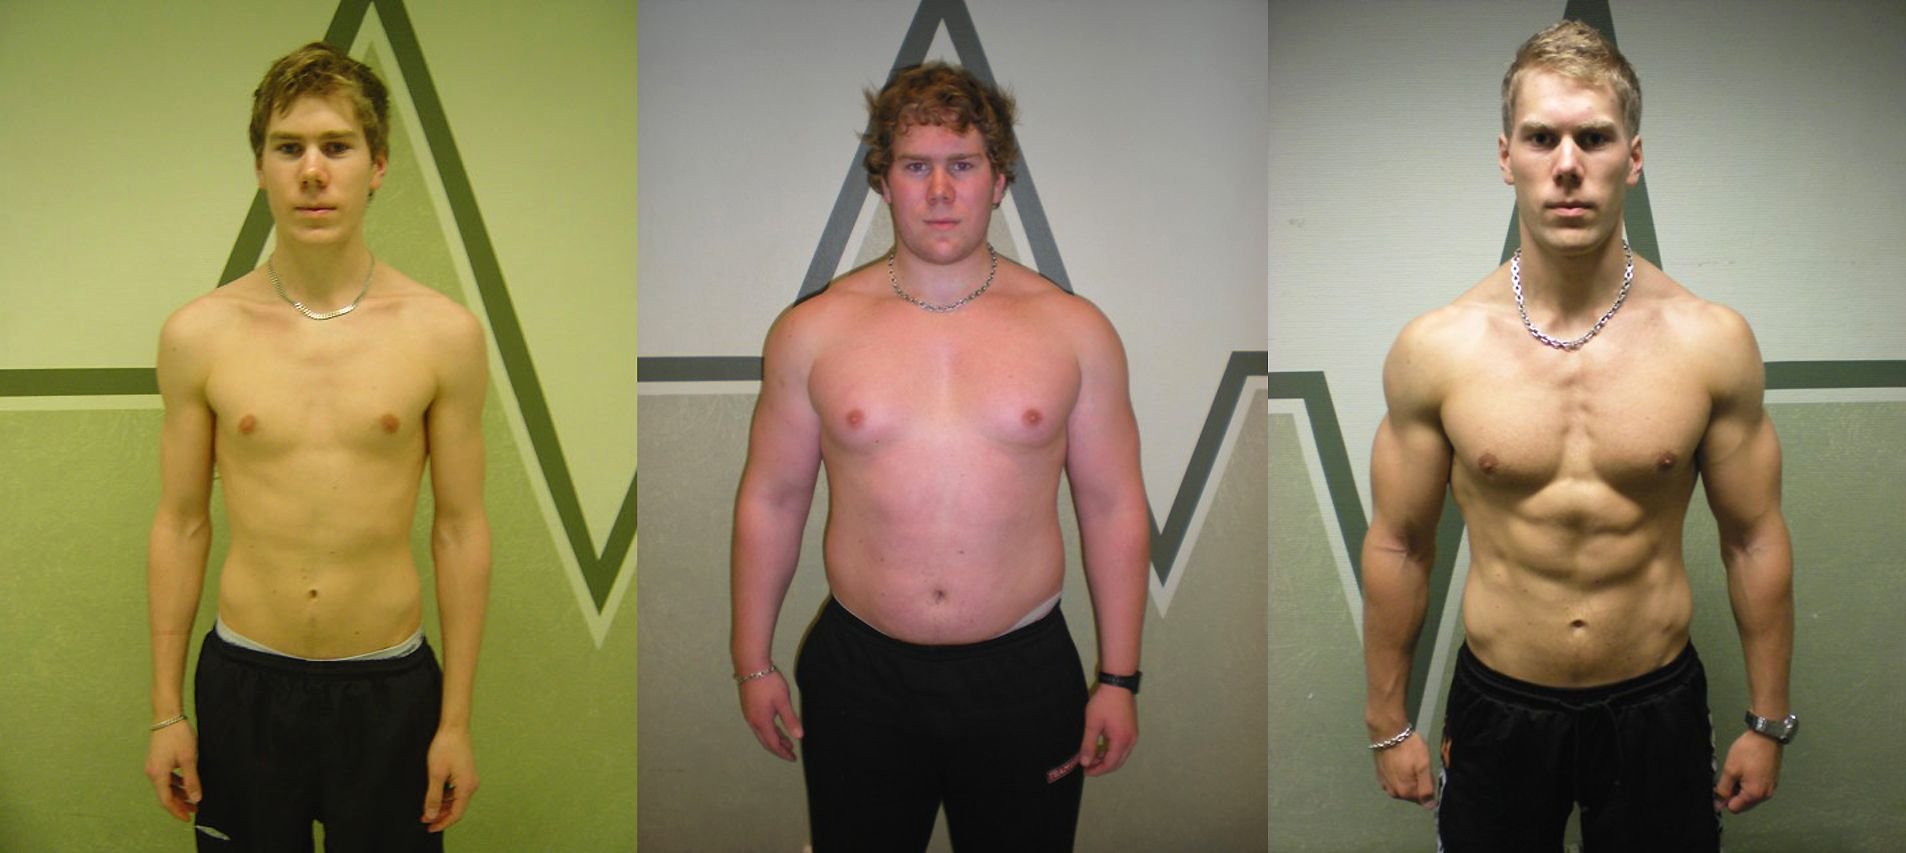 Жир превращается в мышцы. Эктоморф 80 кг. Эктоморф 90 кг. Трансформация тела. Прогресс за год тренировок.